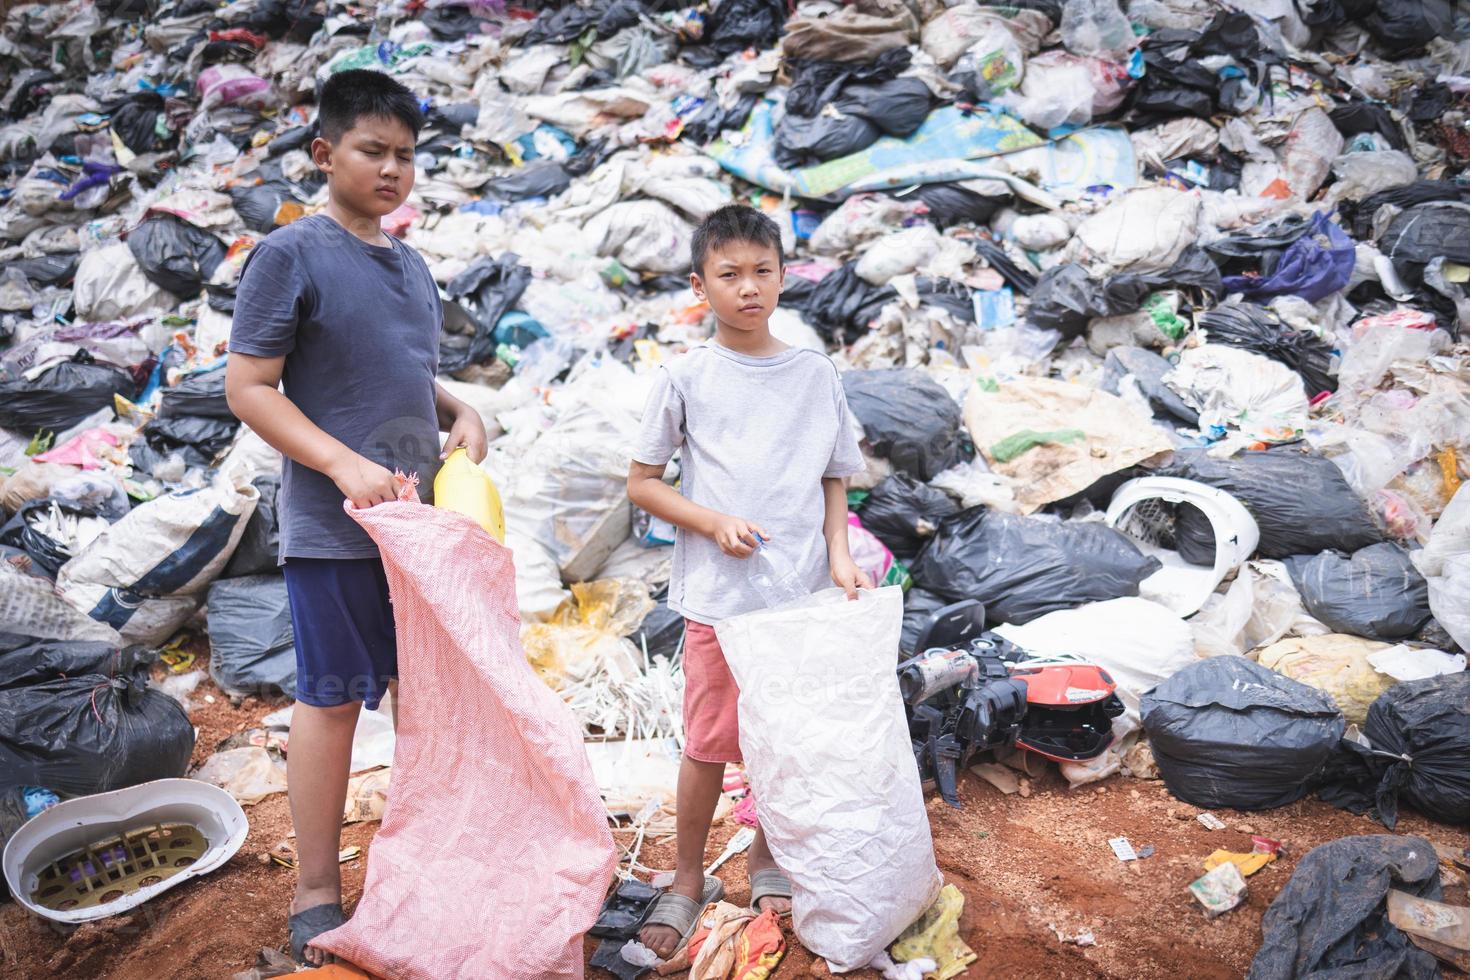 Kinder sind gezwungen zu Arbeit auf Müll. Kind Arbeit, Arm Kinder sammeln Müll. Armut, Gewalt Kinder und Handel Konzept, Anti-Kind Arbeit, Rechte, Tag auf Dezember 10. foto